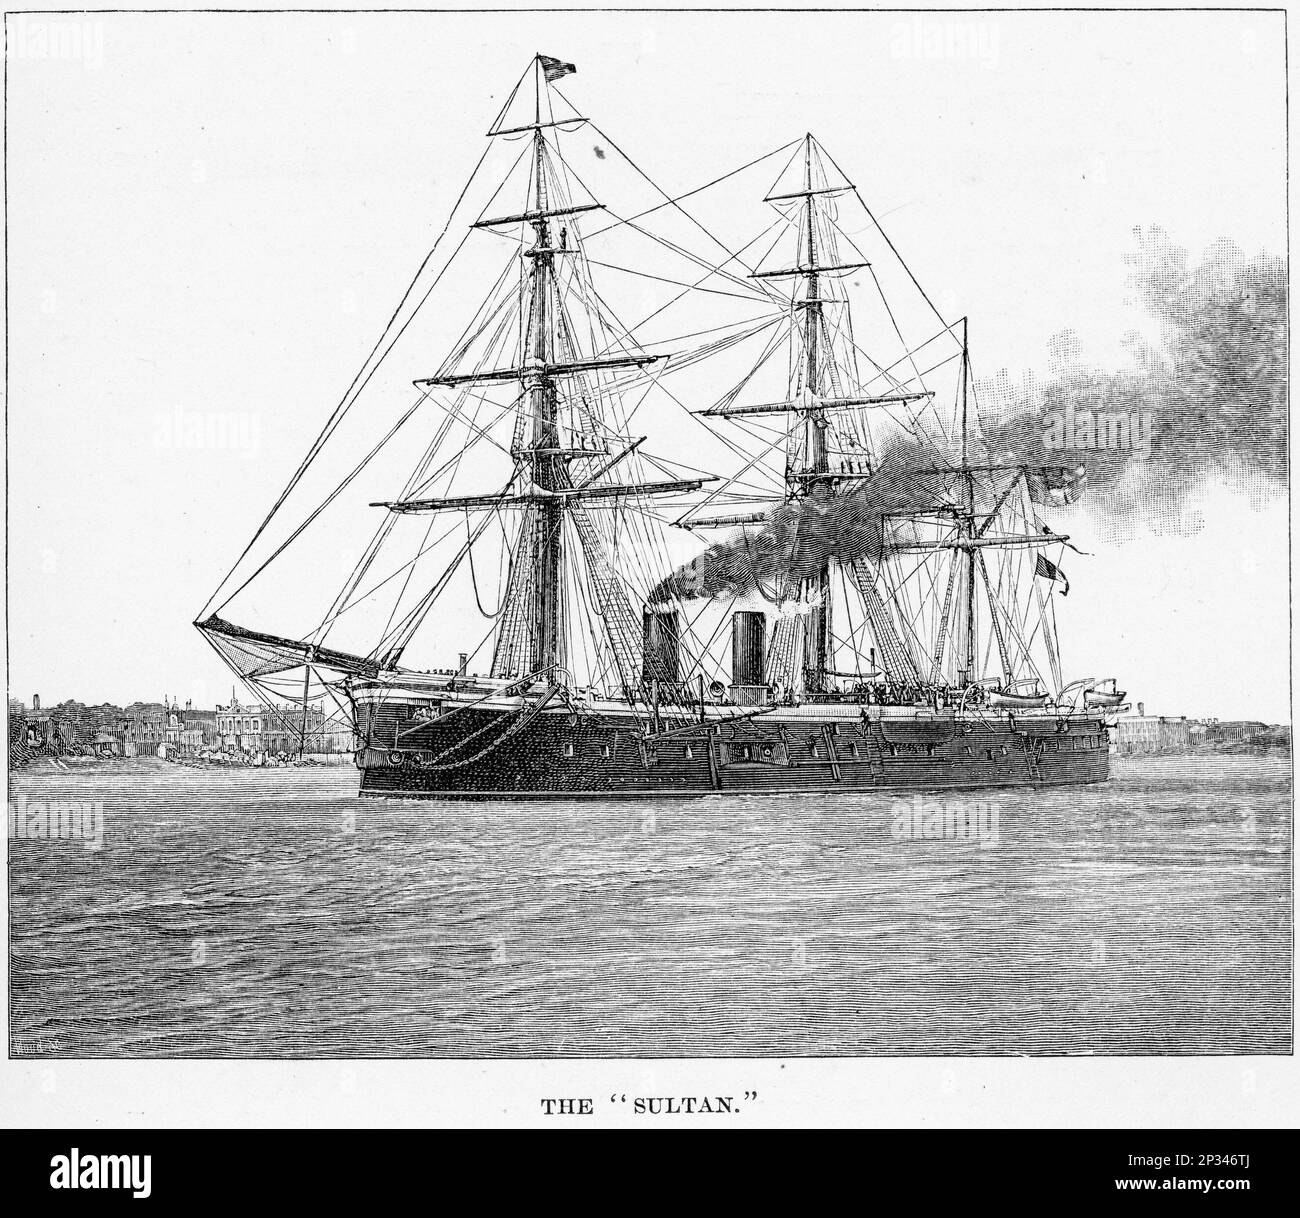 HMS Sultan, eine Breitseite der Royal Navy der viktorianischen Epoche, die ihre Hauptrüstung in einer Zentralbatterie trug. Sie wurde nach Sultan Abdulaziz vom Osmanischen Reich benannt, der England besuchte, als sie niedergelegt wurde. Stockfoto